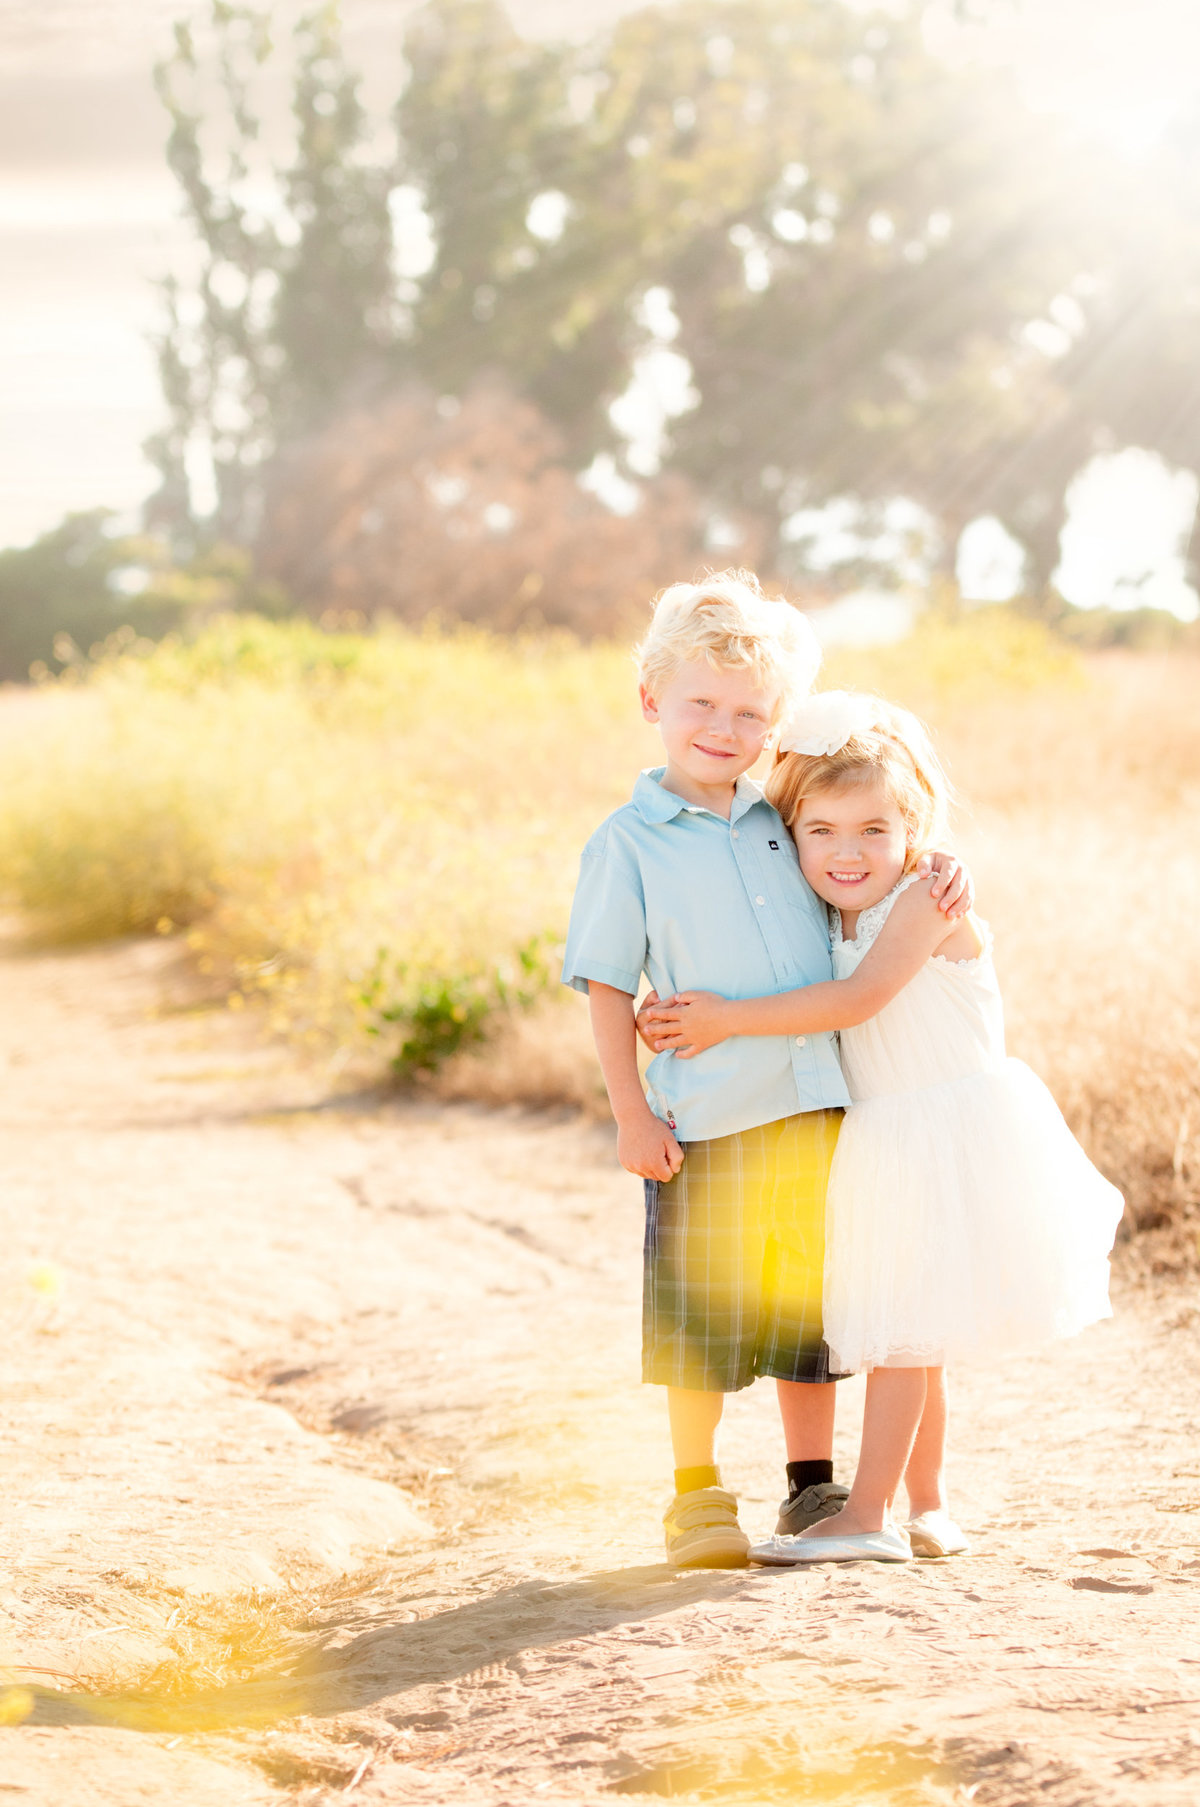 Trevor Morrison children photography, family photography, wedding photography, Ventura County